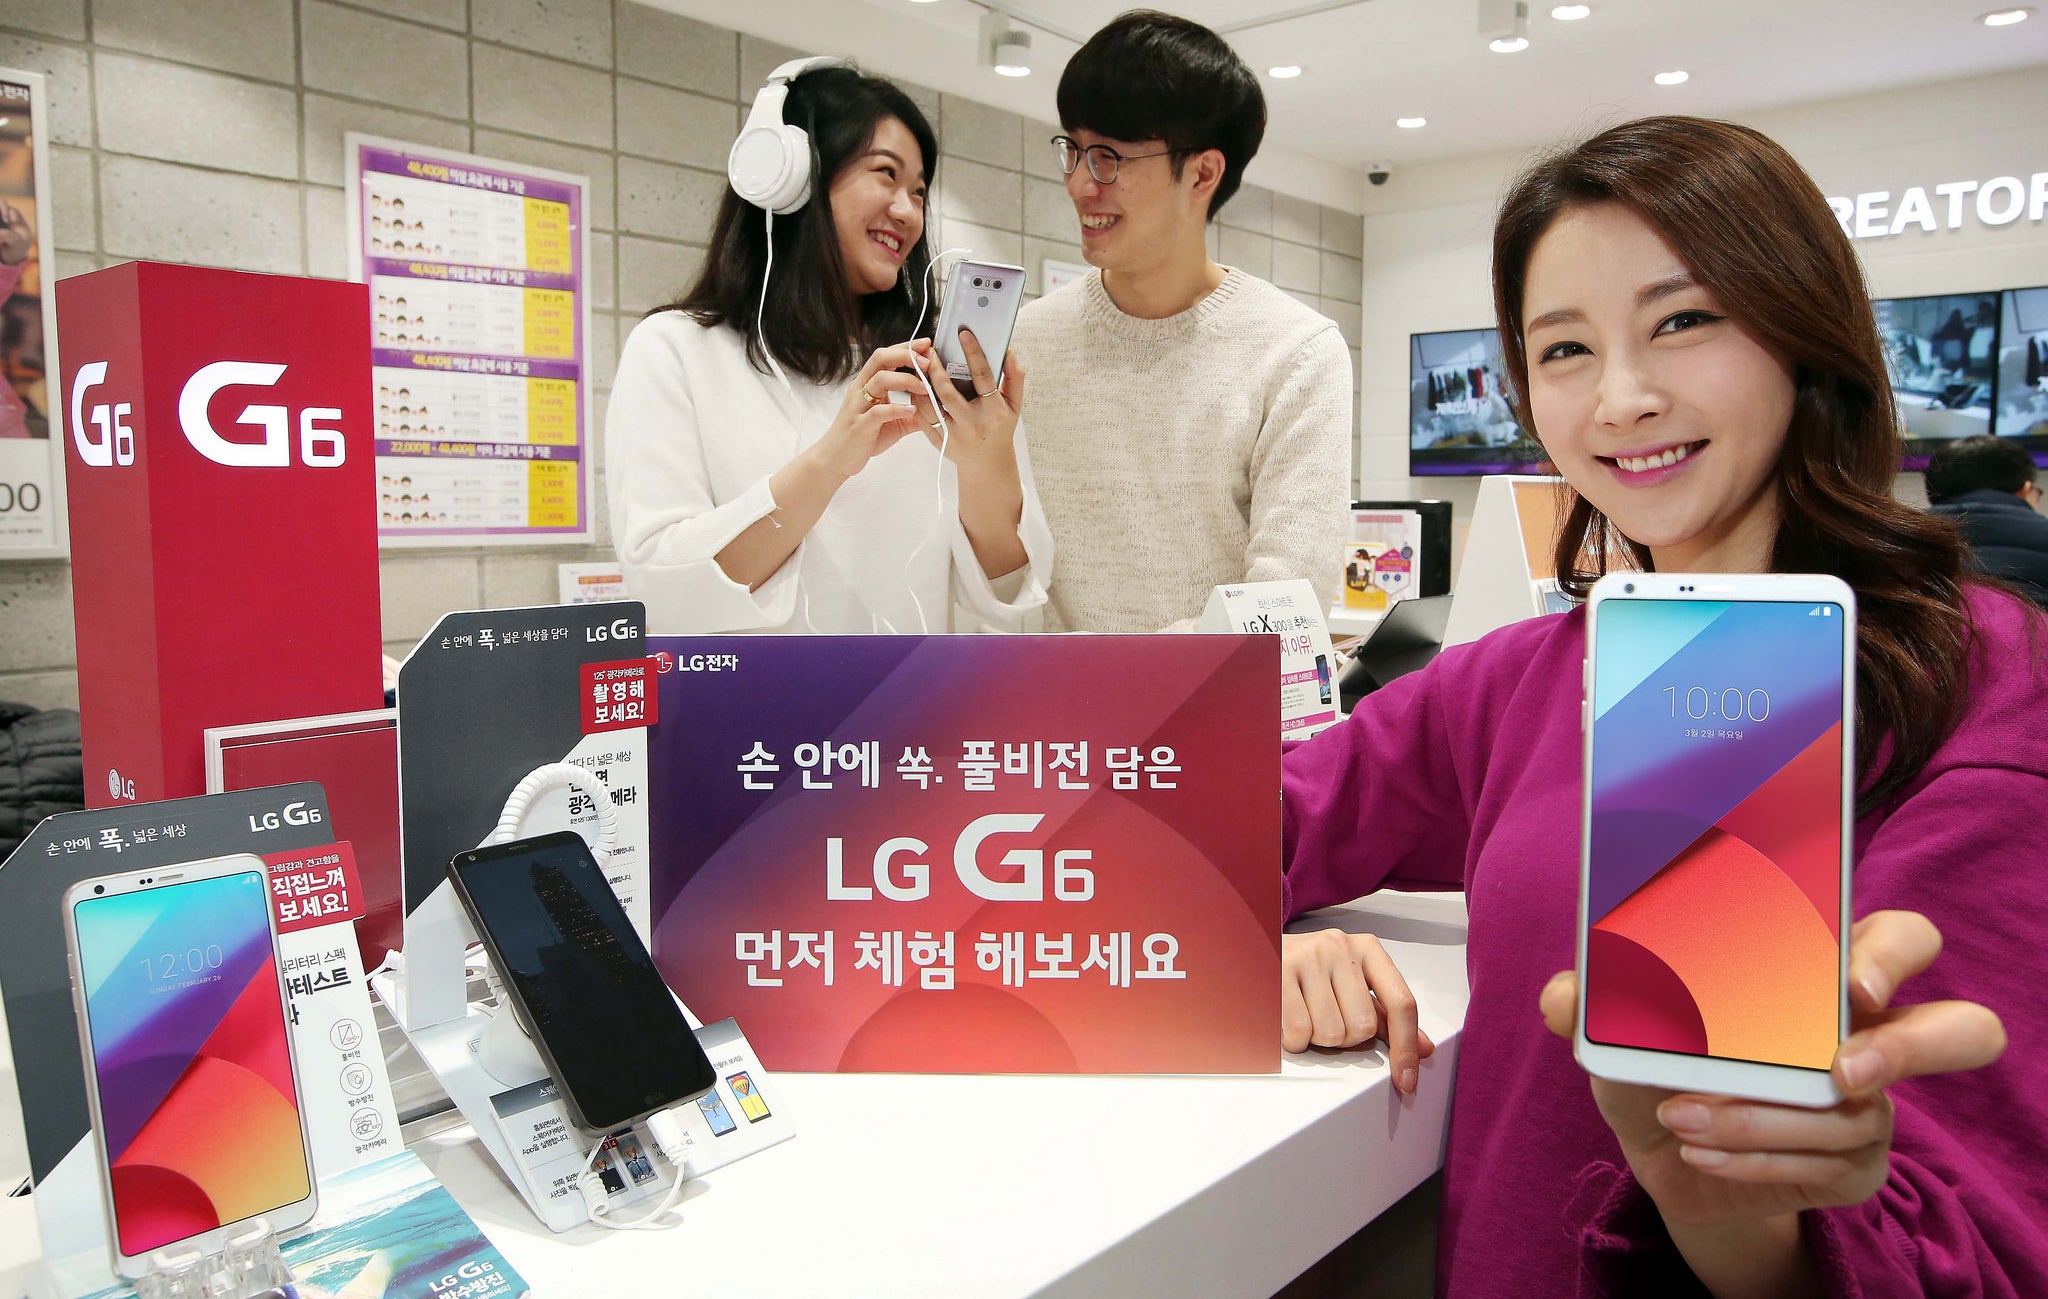 Do you like the LG G6?